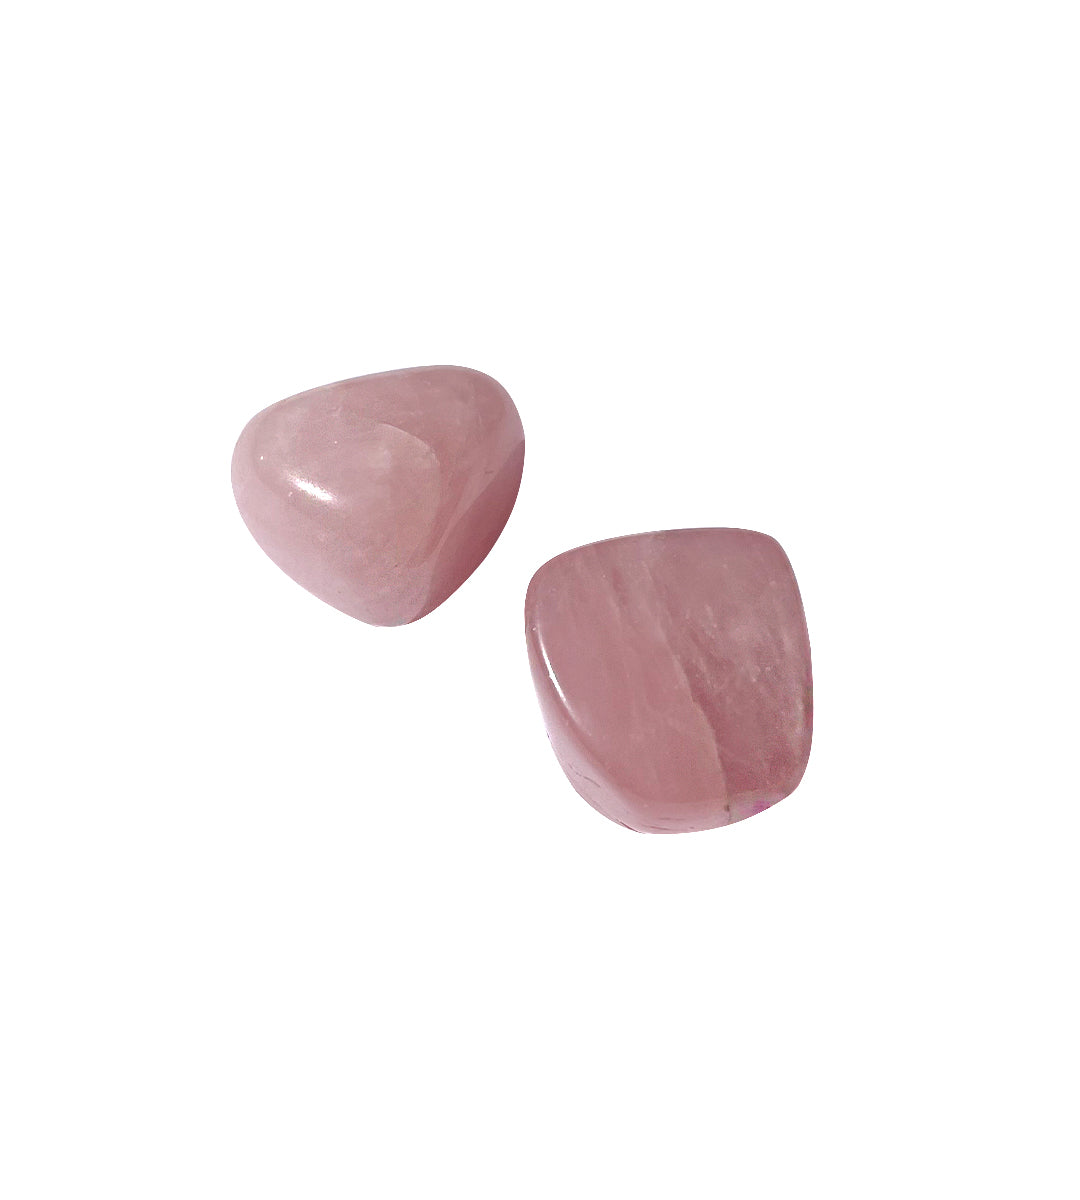 Rose Quartz Tumble Stones